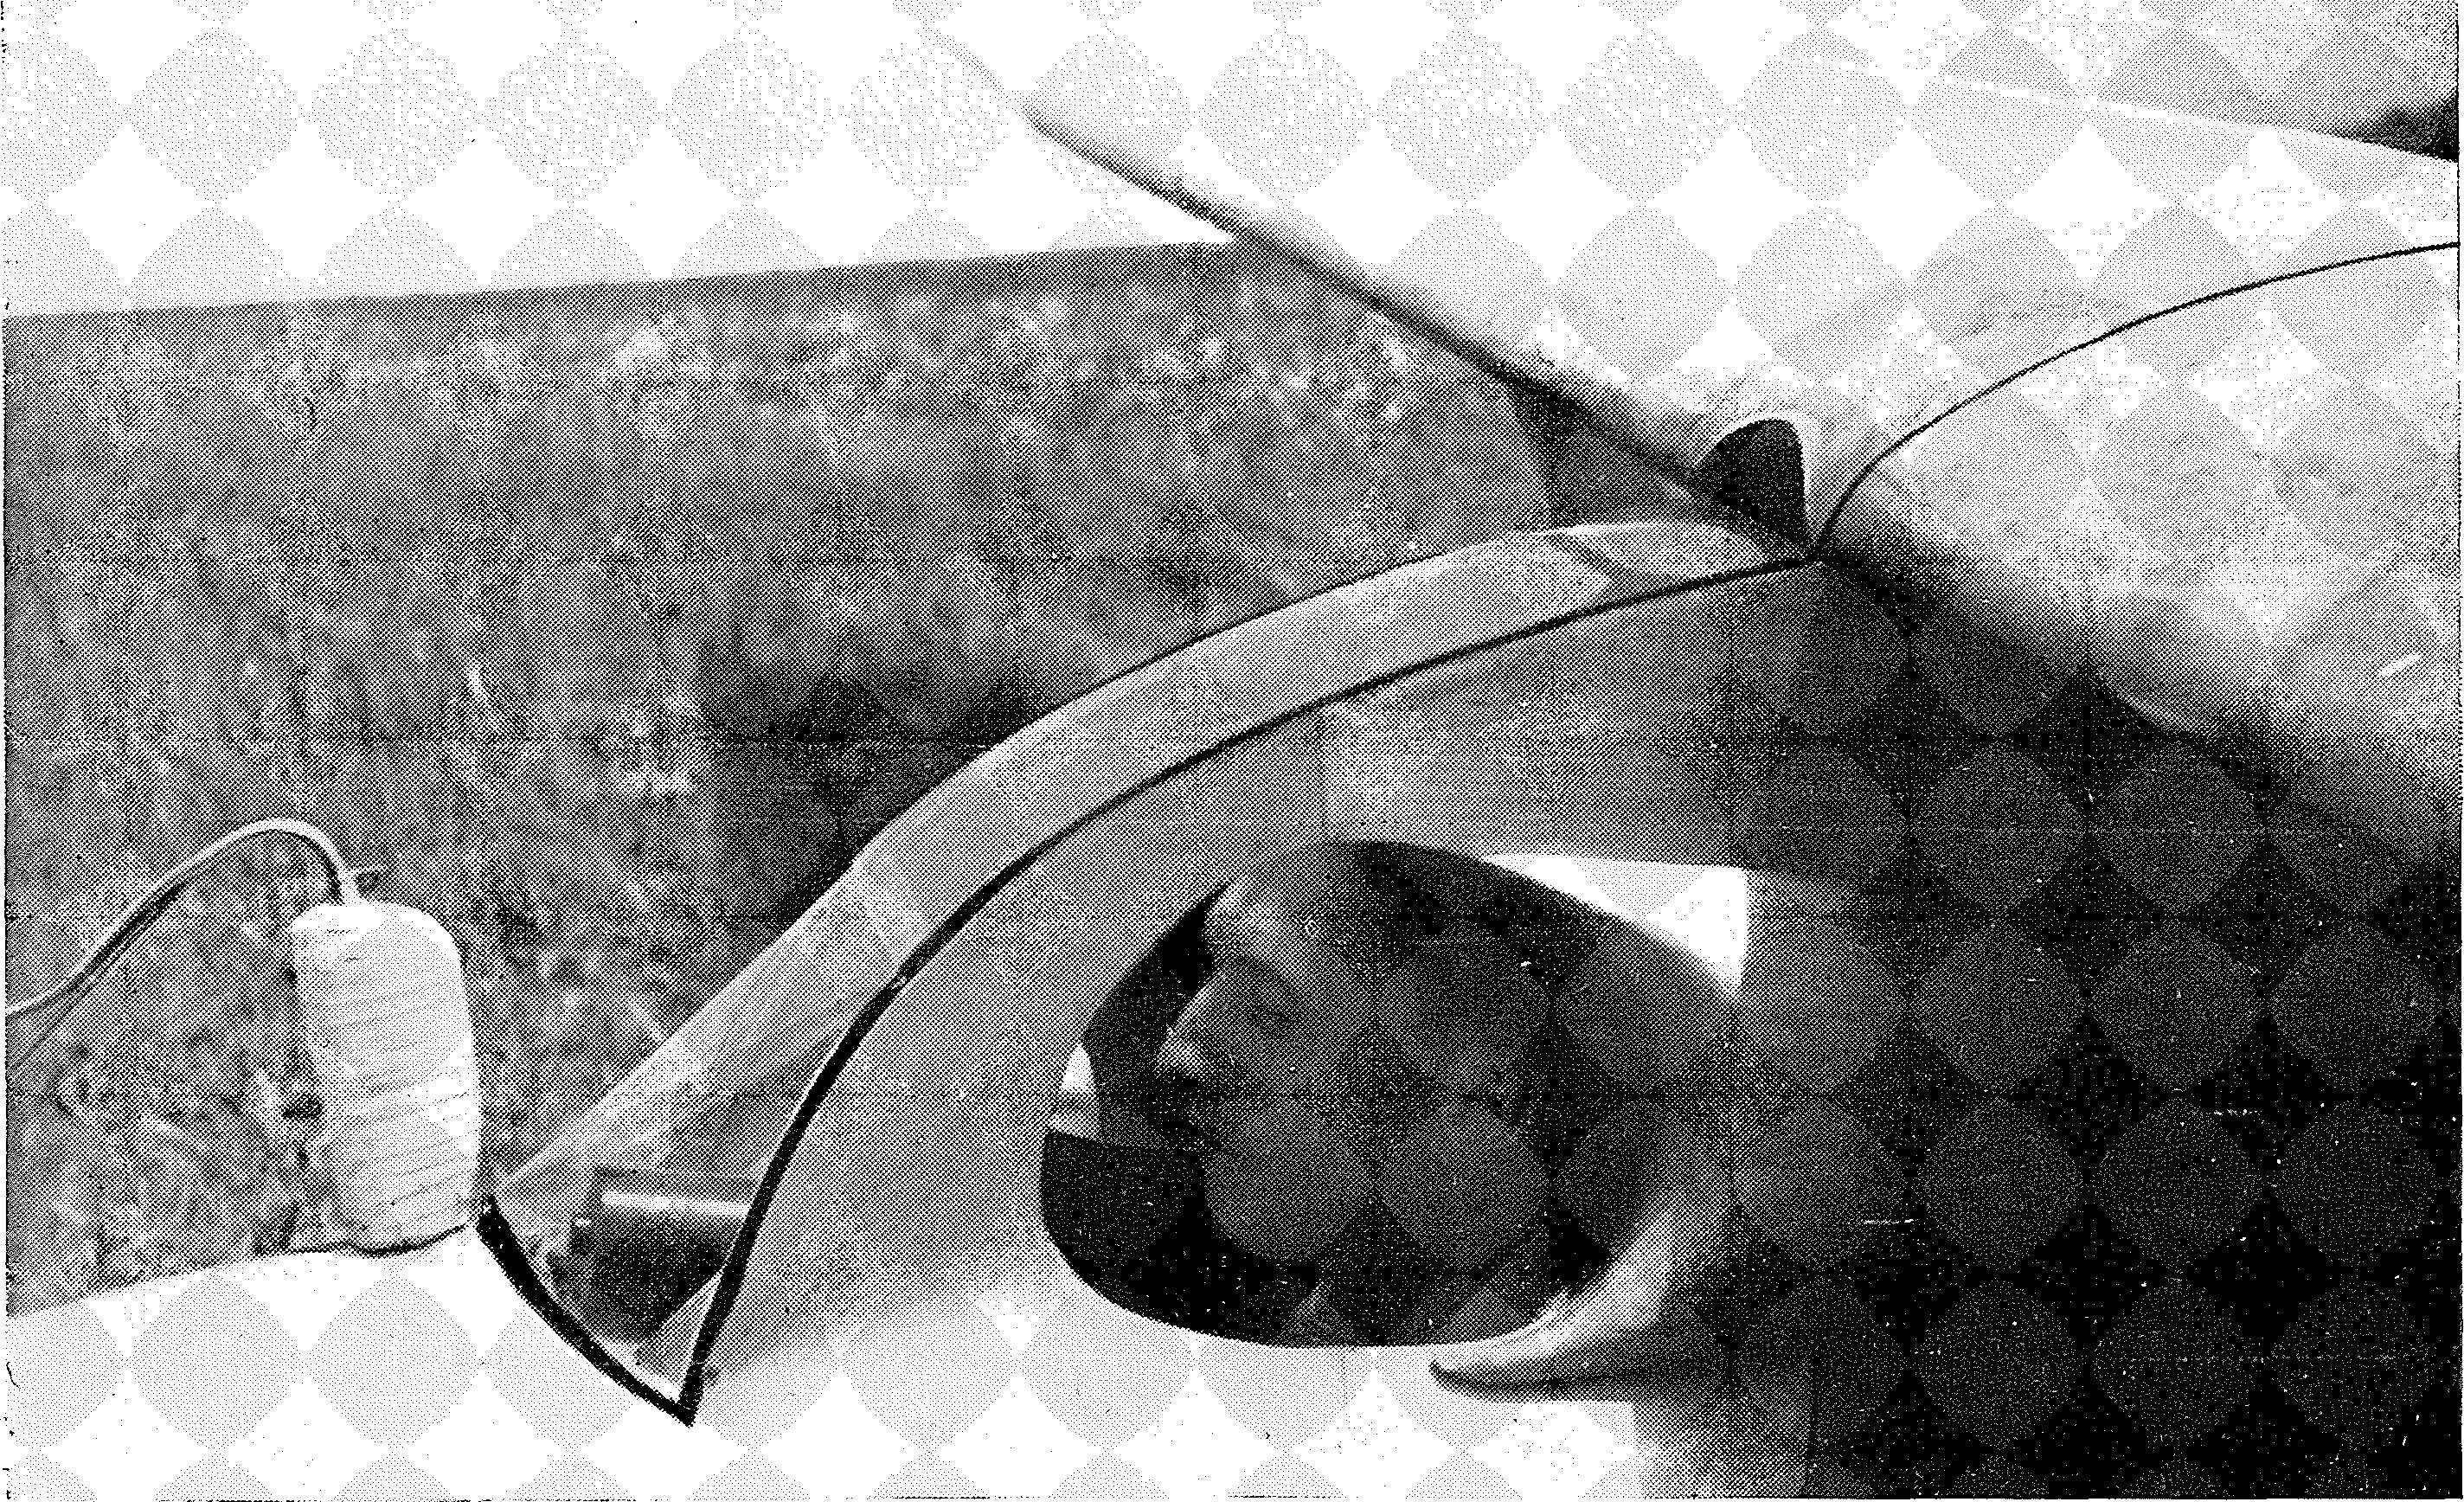 Luftfahrt und Luftverkehr sowie Luftwaffe im Dritten Reich 1935